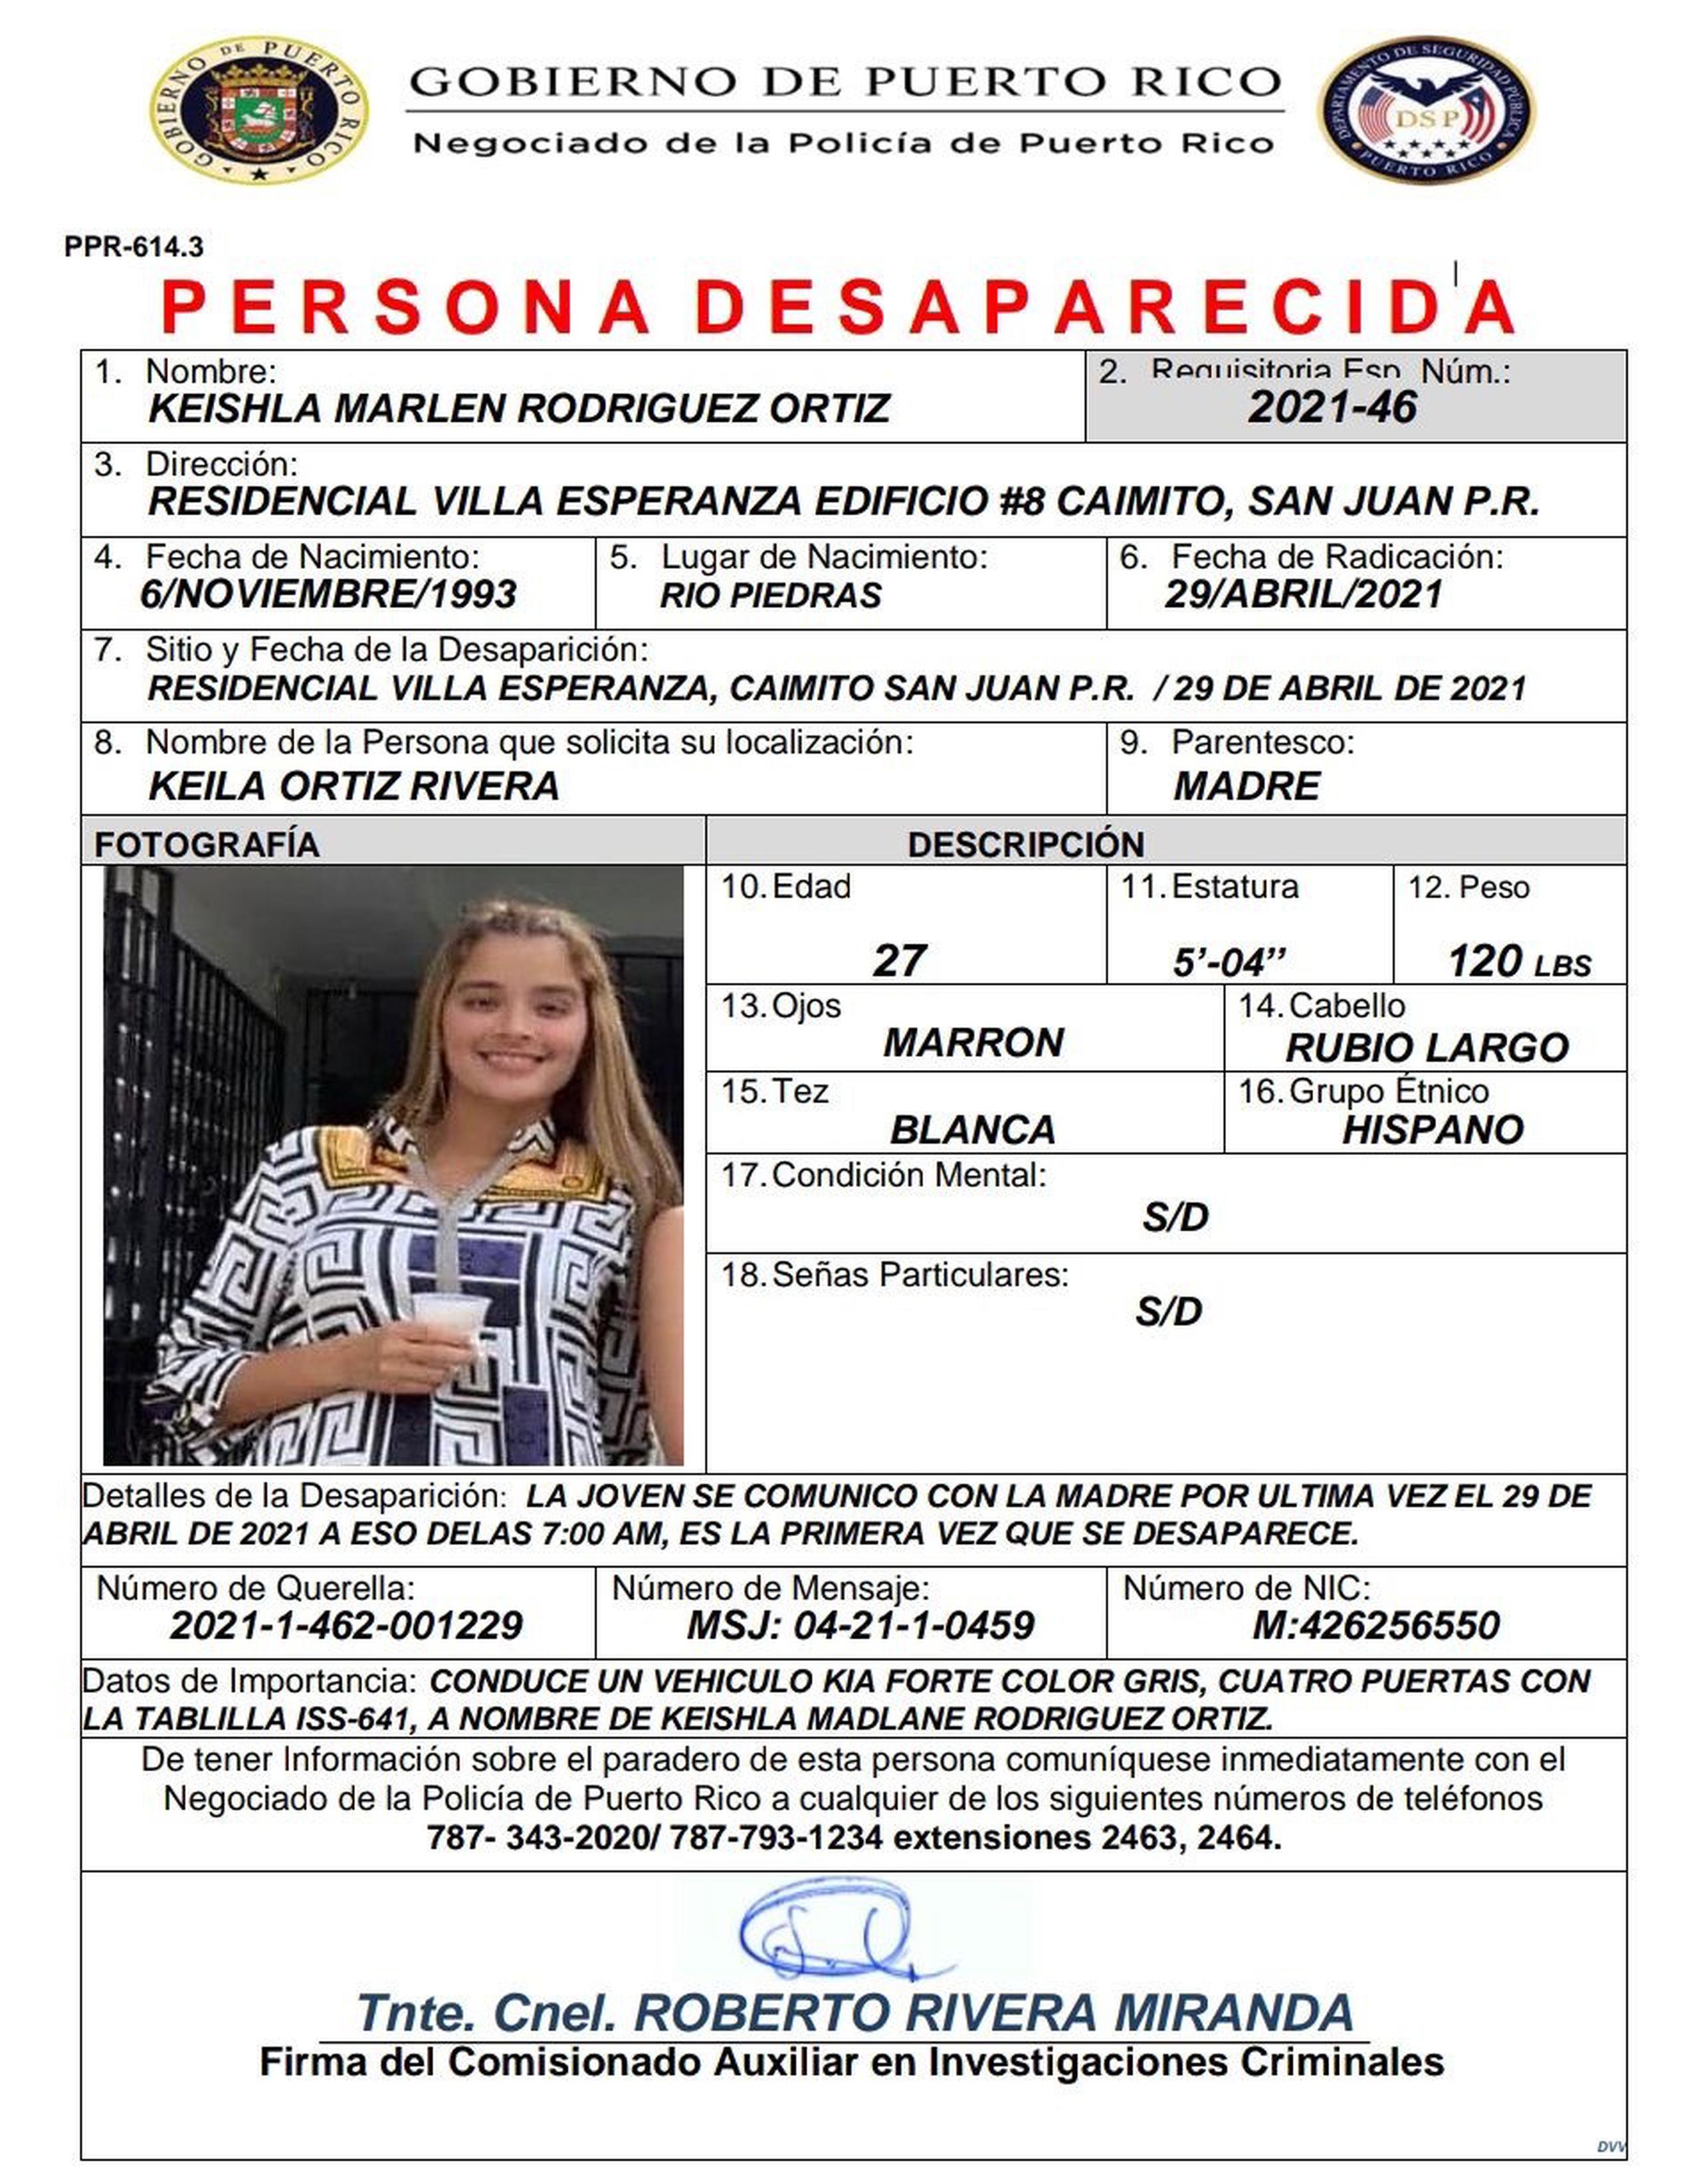 Información brindada a la Policía sobre la joven desaparecida Keishla Marlen Rodríguez Ortiz